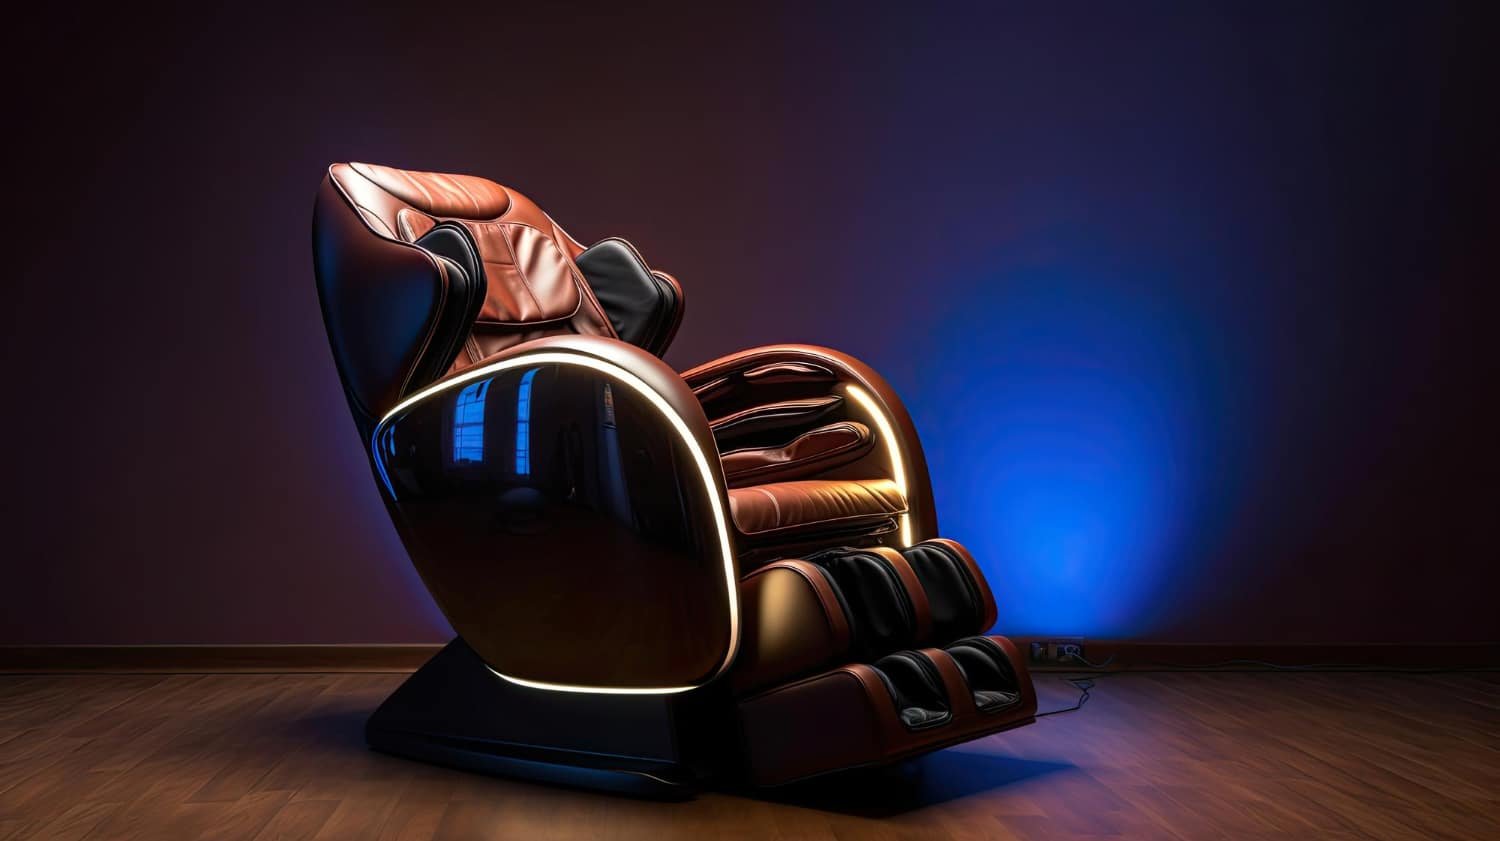 AndaseaT Ultimate Gaming Chair Comfort